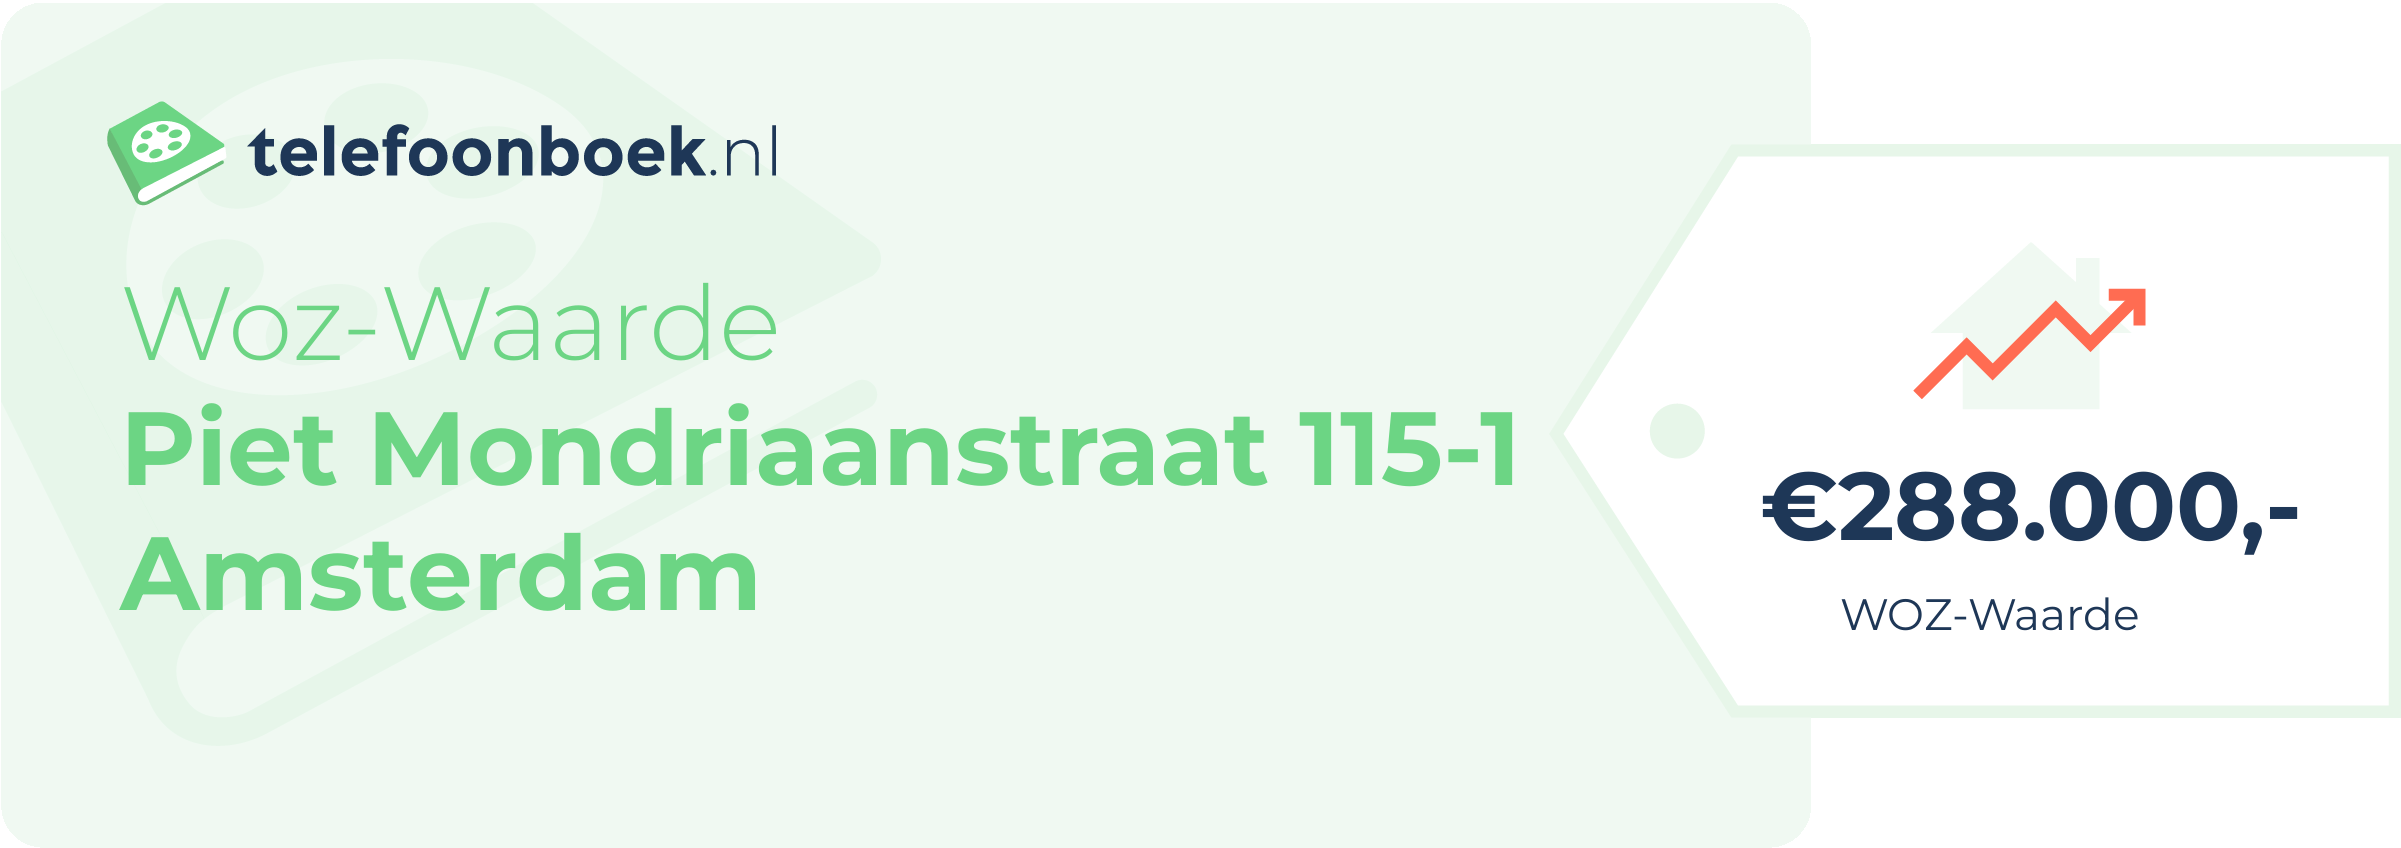 WOZ-waarde Piet Mondriaanstraat 115-1 Amsterdam